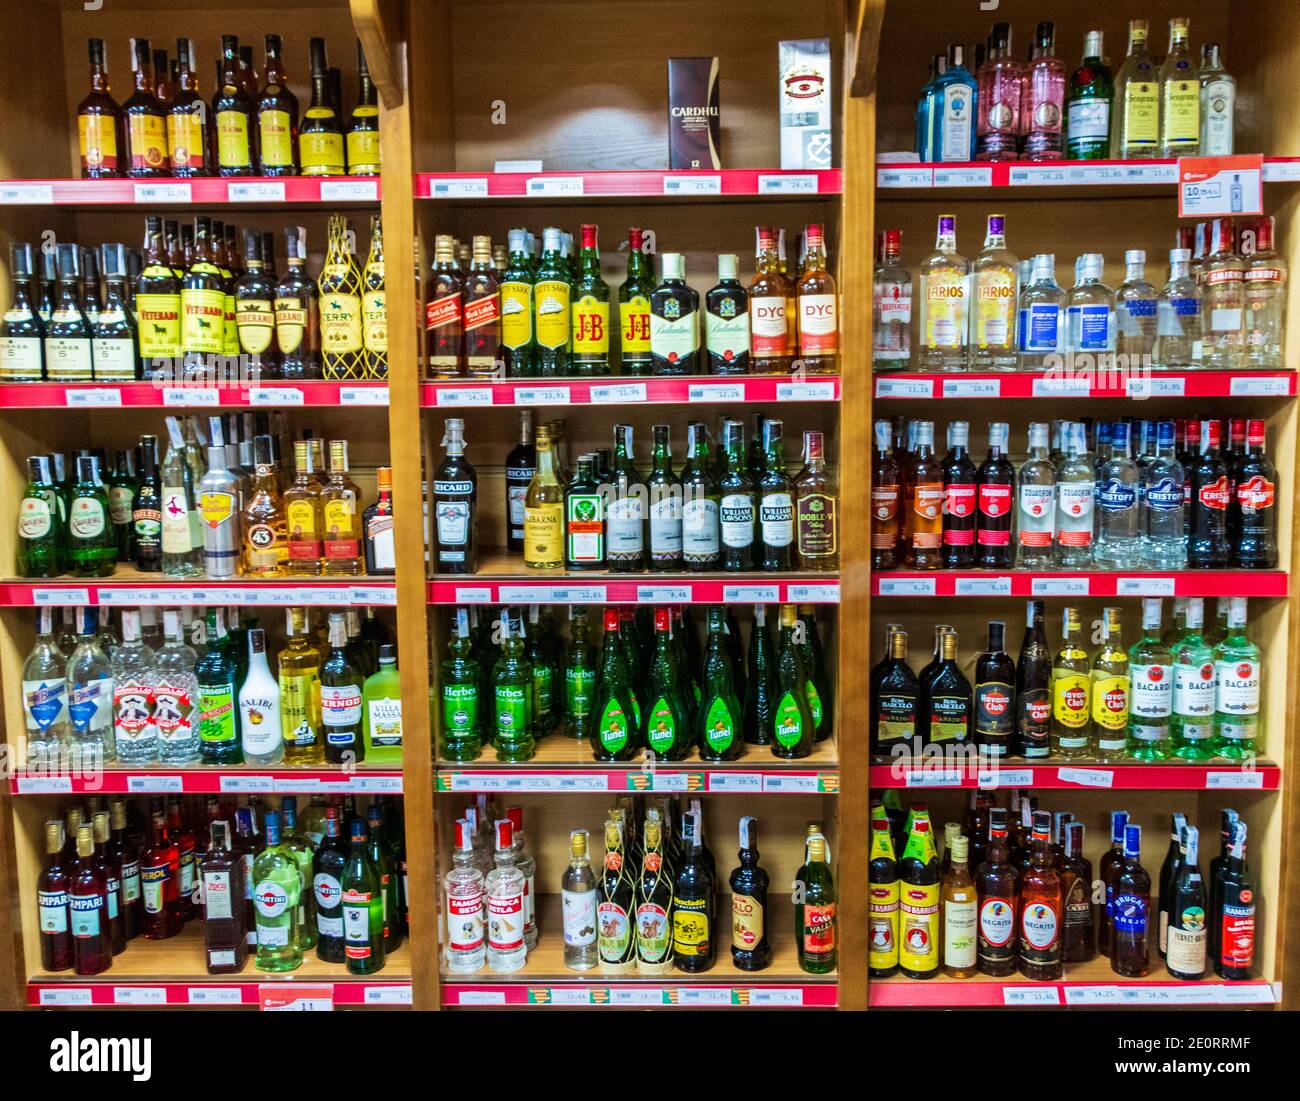 Schnapsregal in einem Supermarkt in Mallorca Spanien Stockfotografie - Alamy